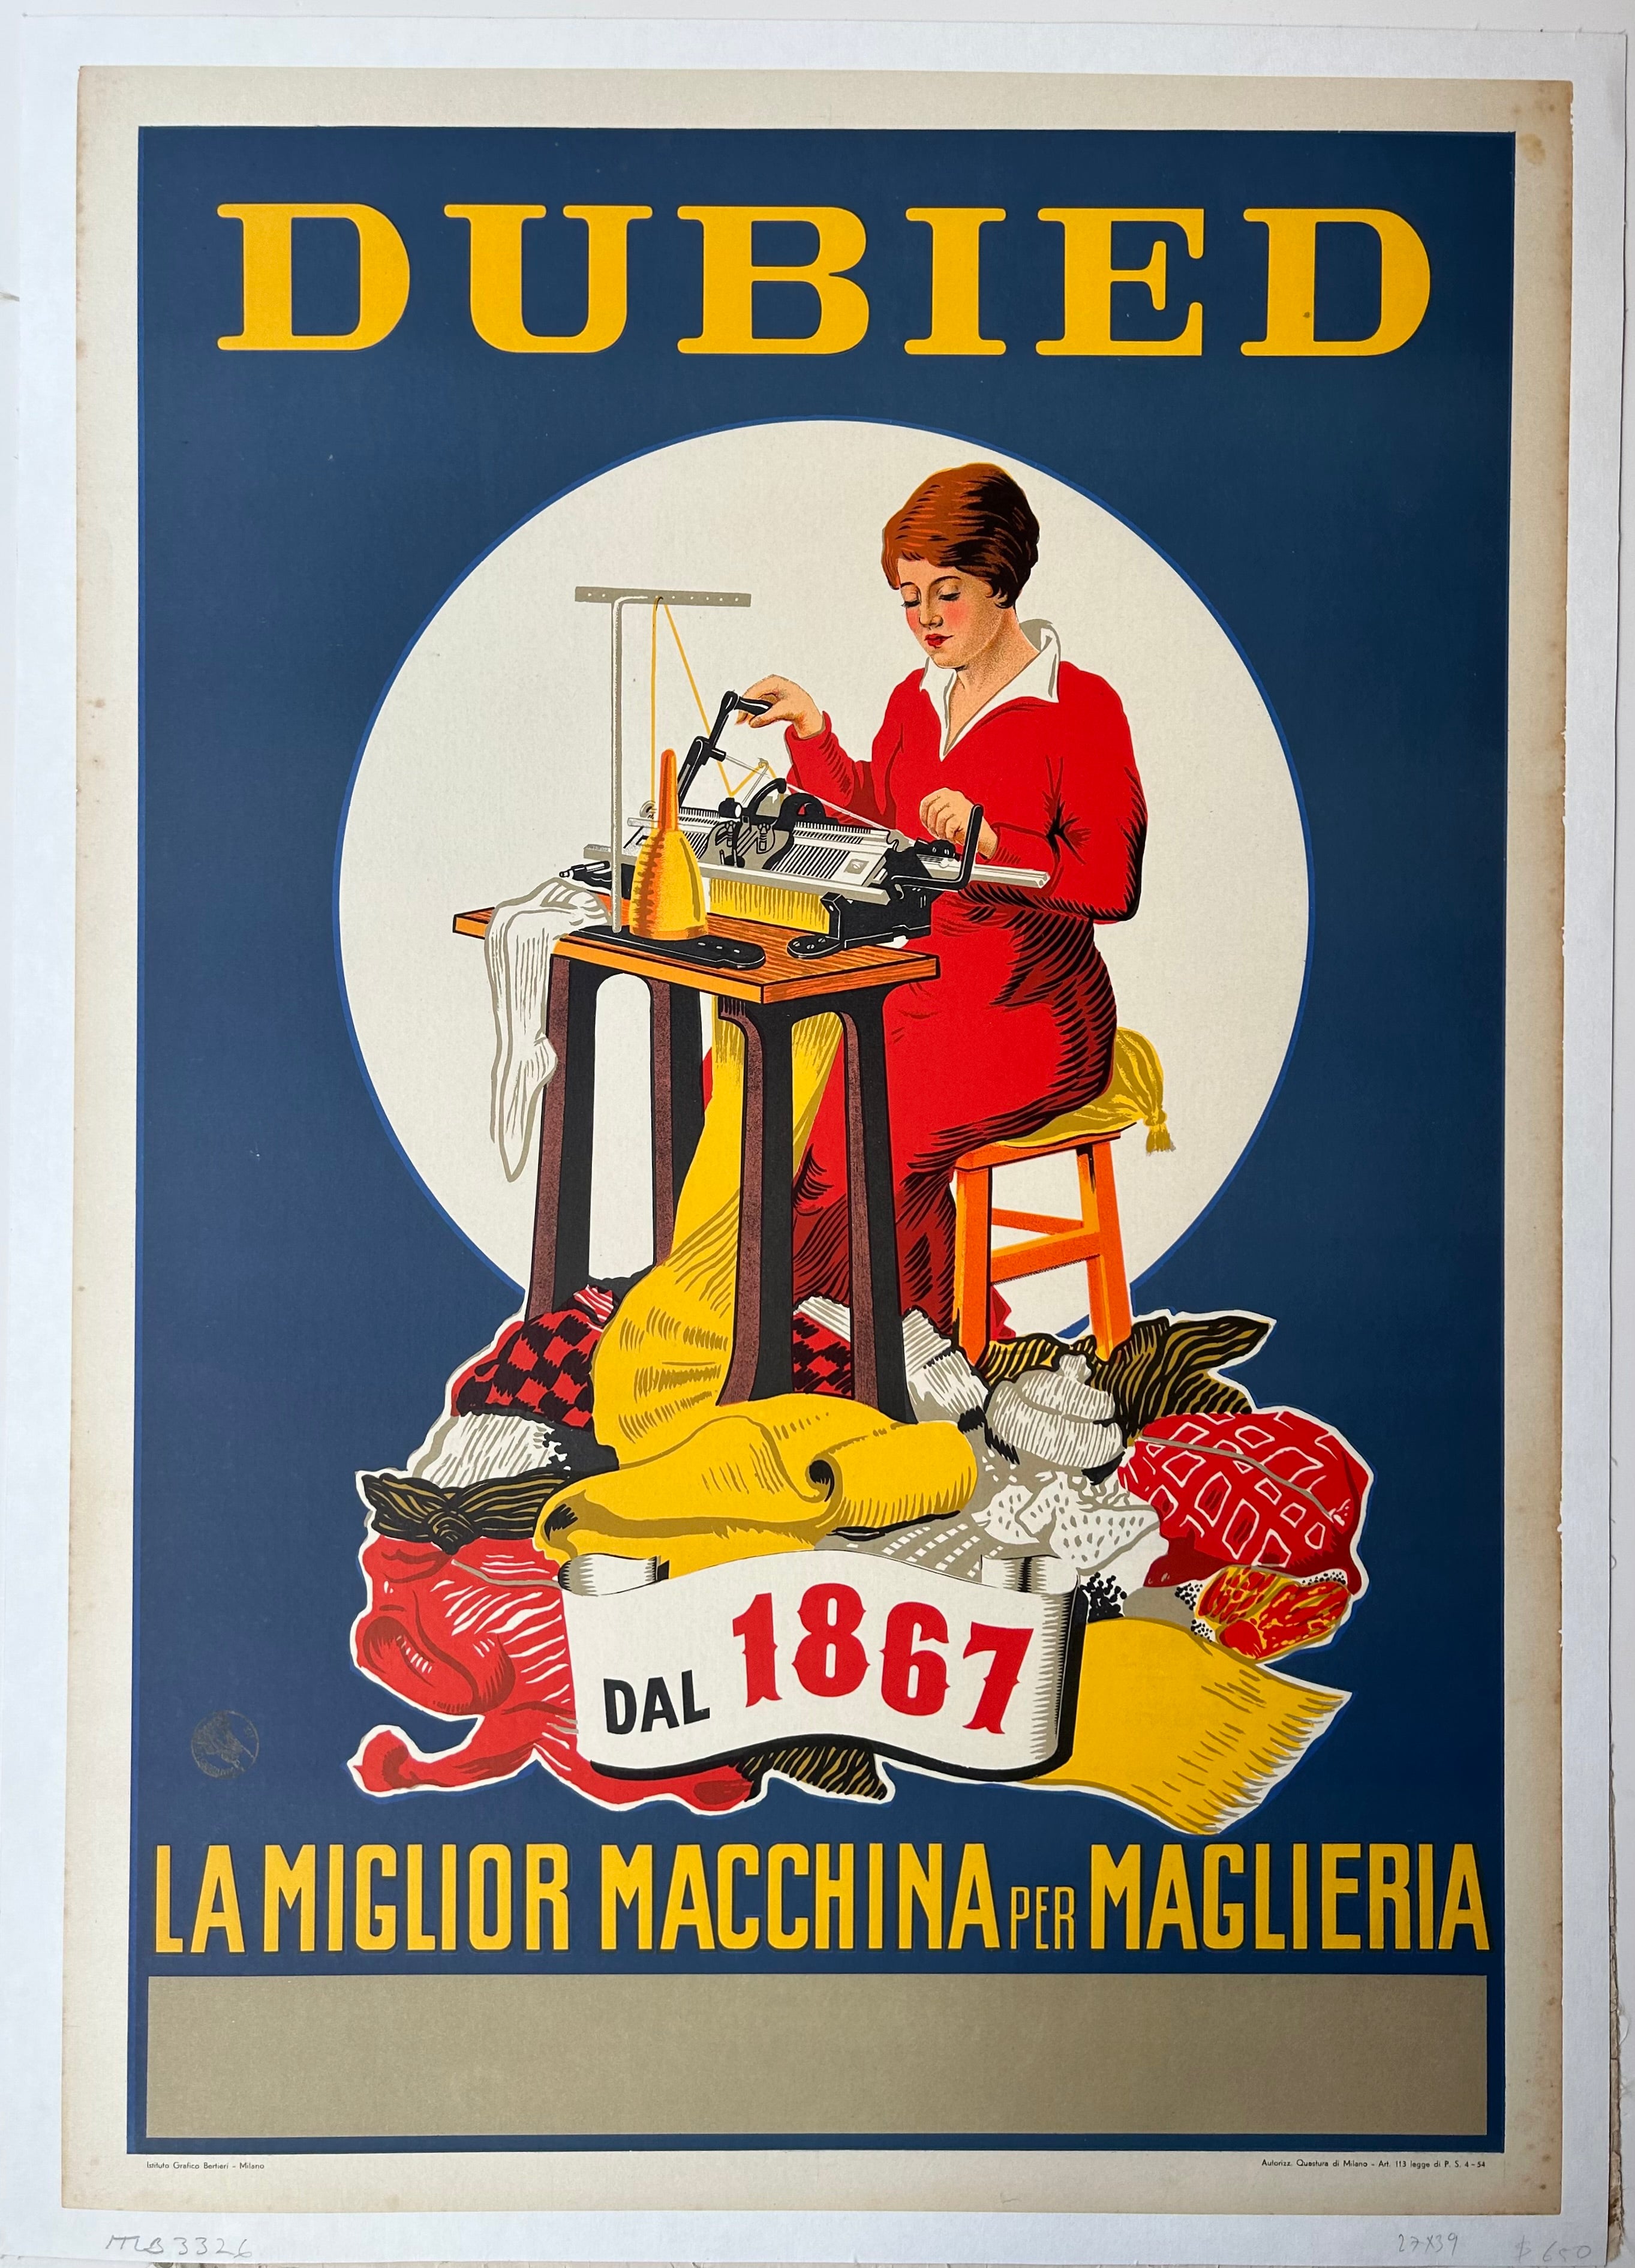 Dubied La Miglior Macchina per Maglieria Poster – Poster Museum